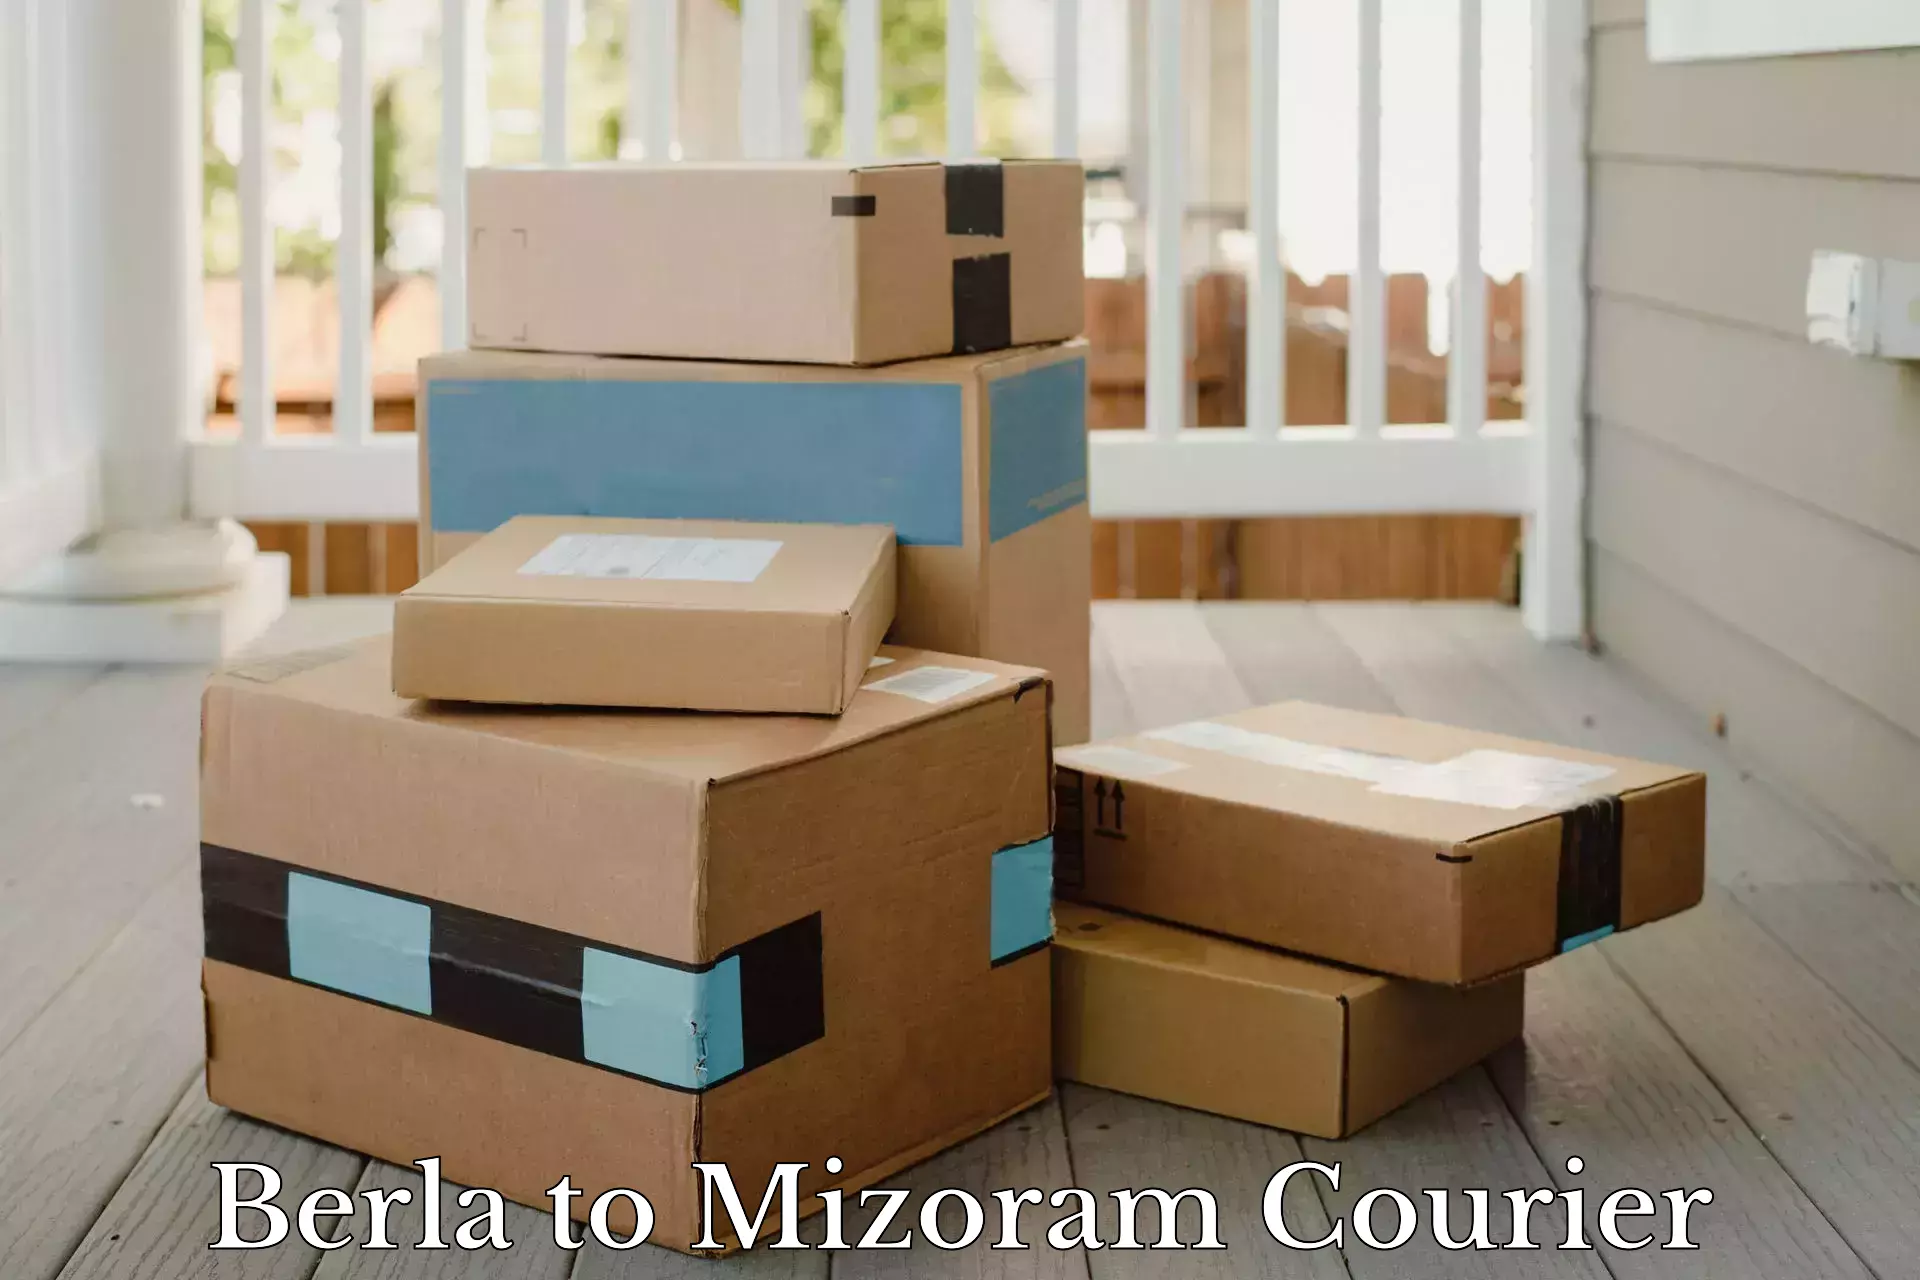 Efficient cargo handling Berla to Mizoram